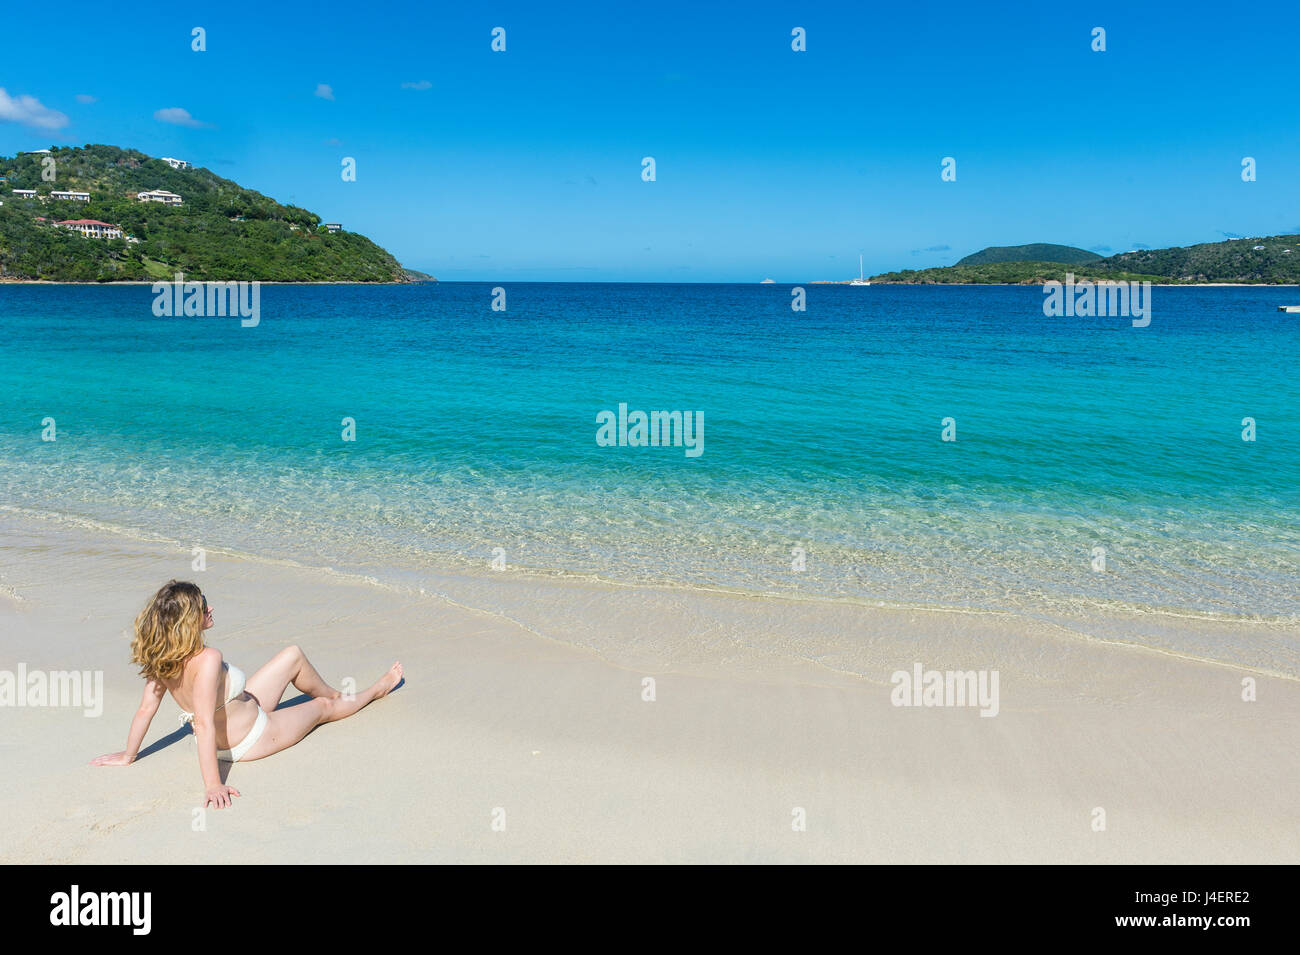 Woman relaxing on Long Bay Beach, Beef Island, Tortola, Îles Vierges britanniques, Antilles, Caraïbes, Amérique Centrale Banque D'Images